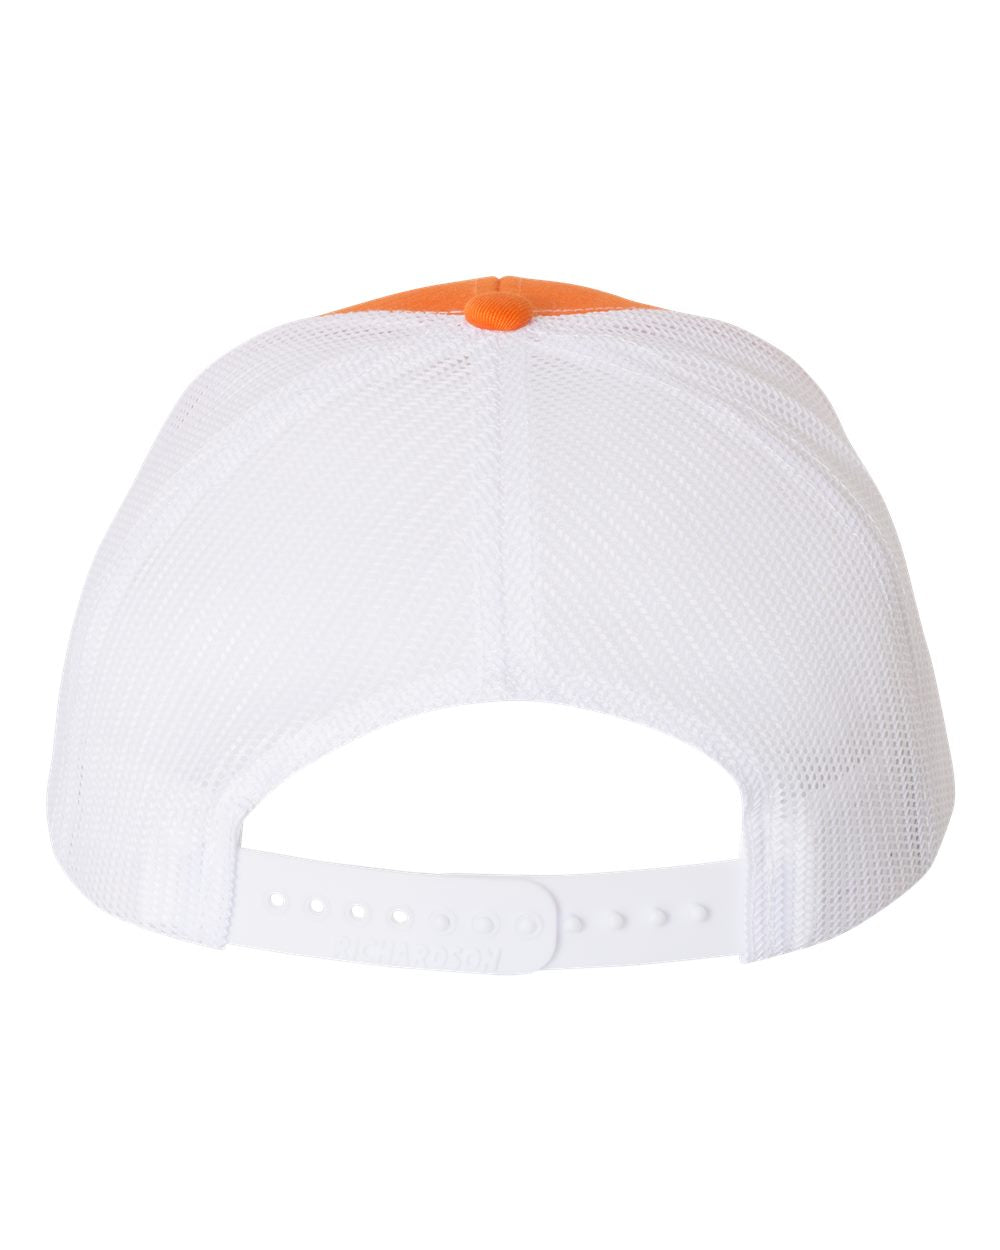 Wade Woodaz WW17 Leather Patch Hat - Orange/White